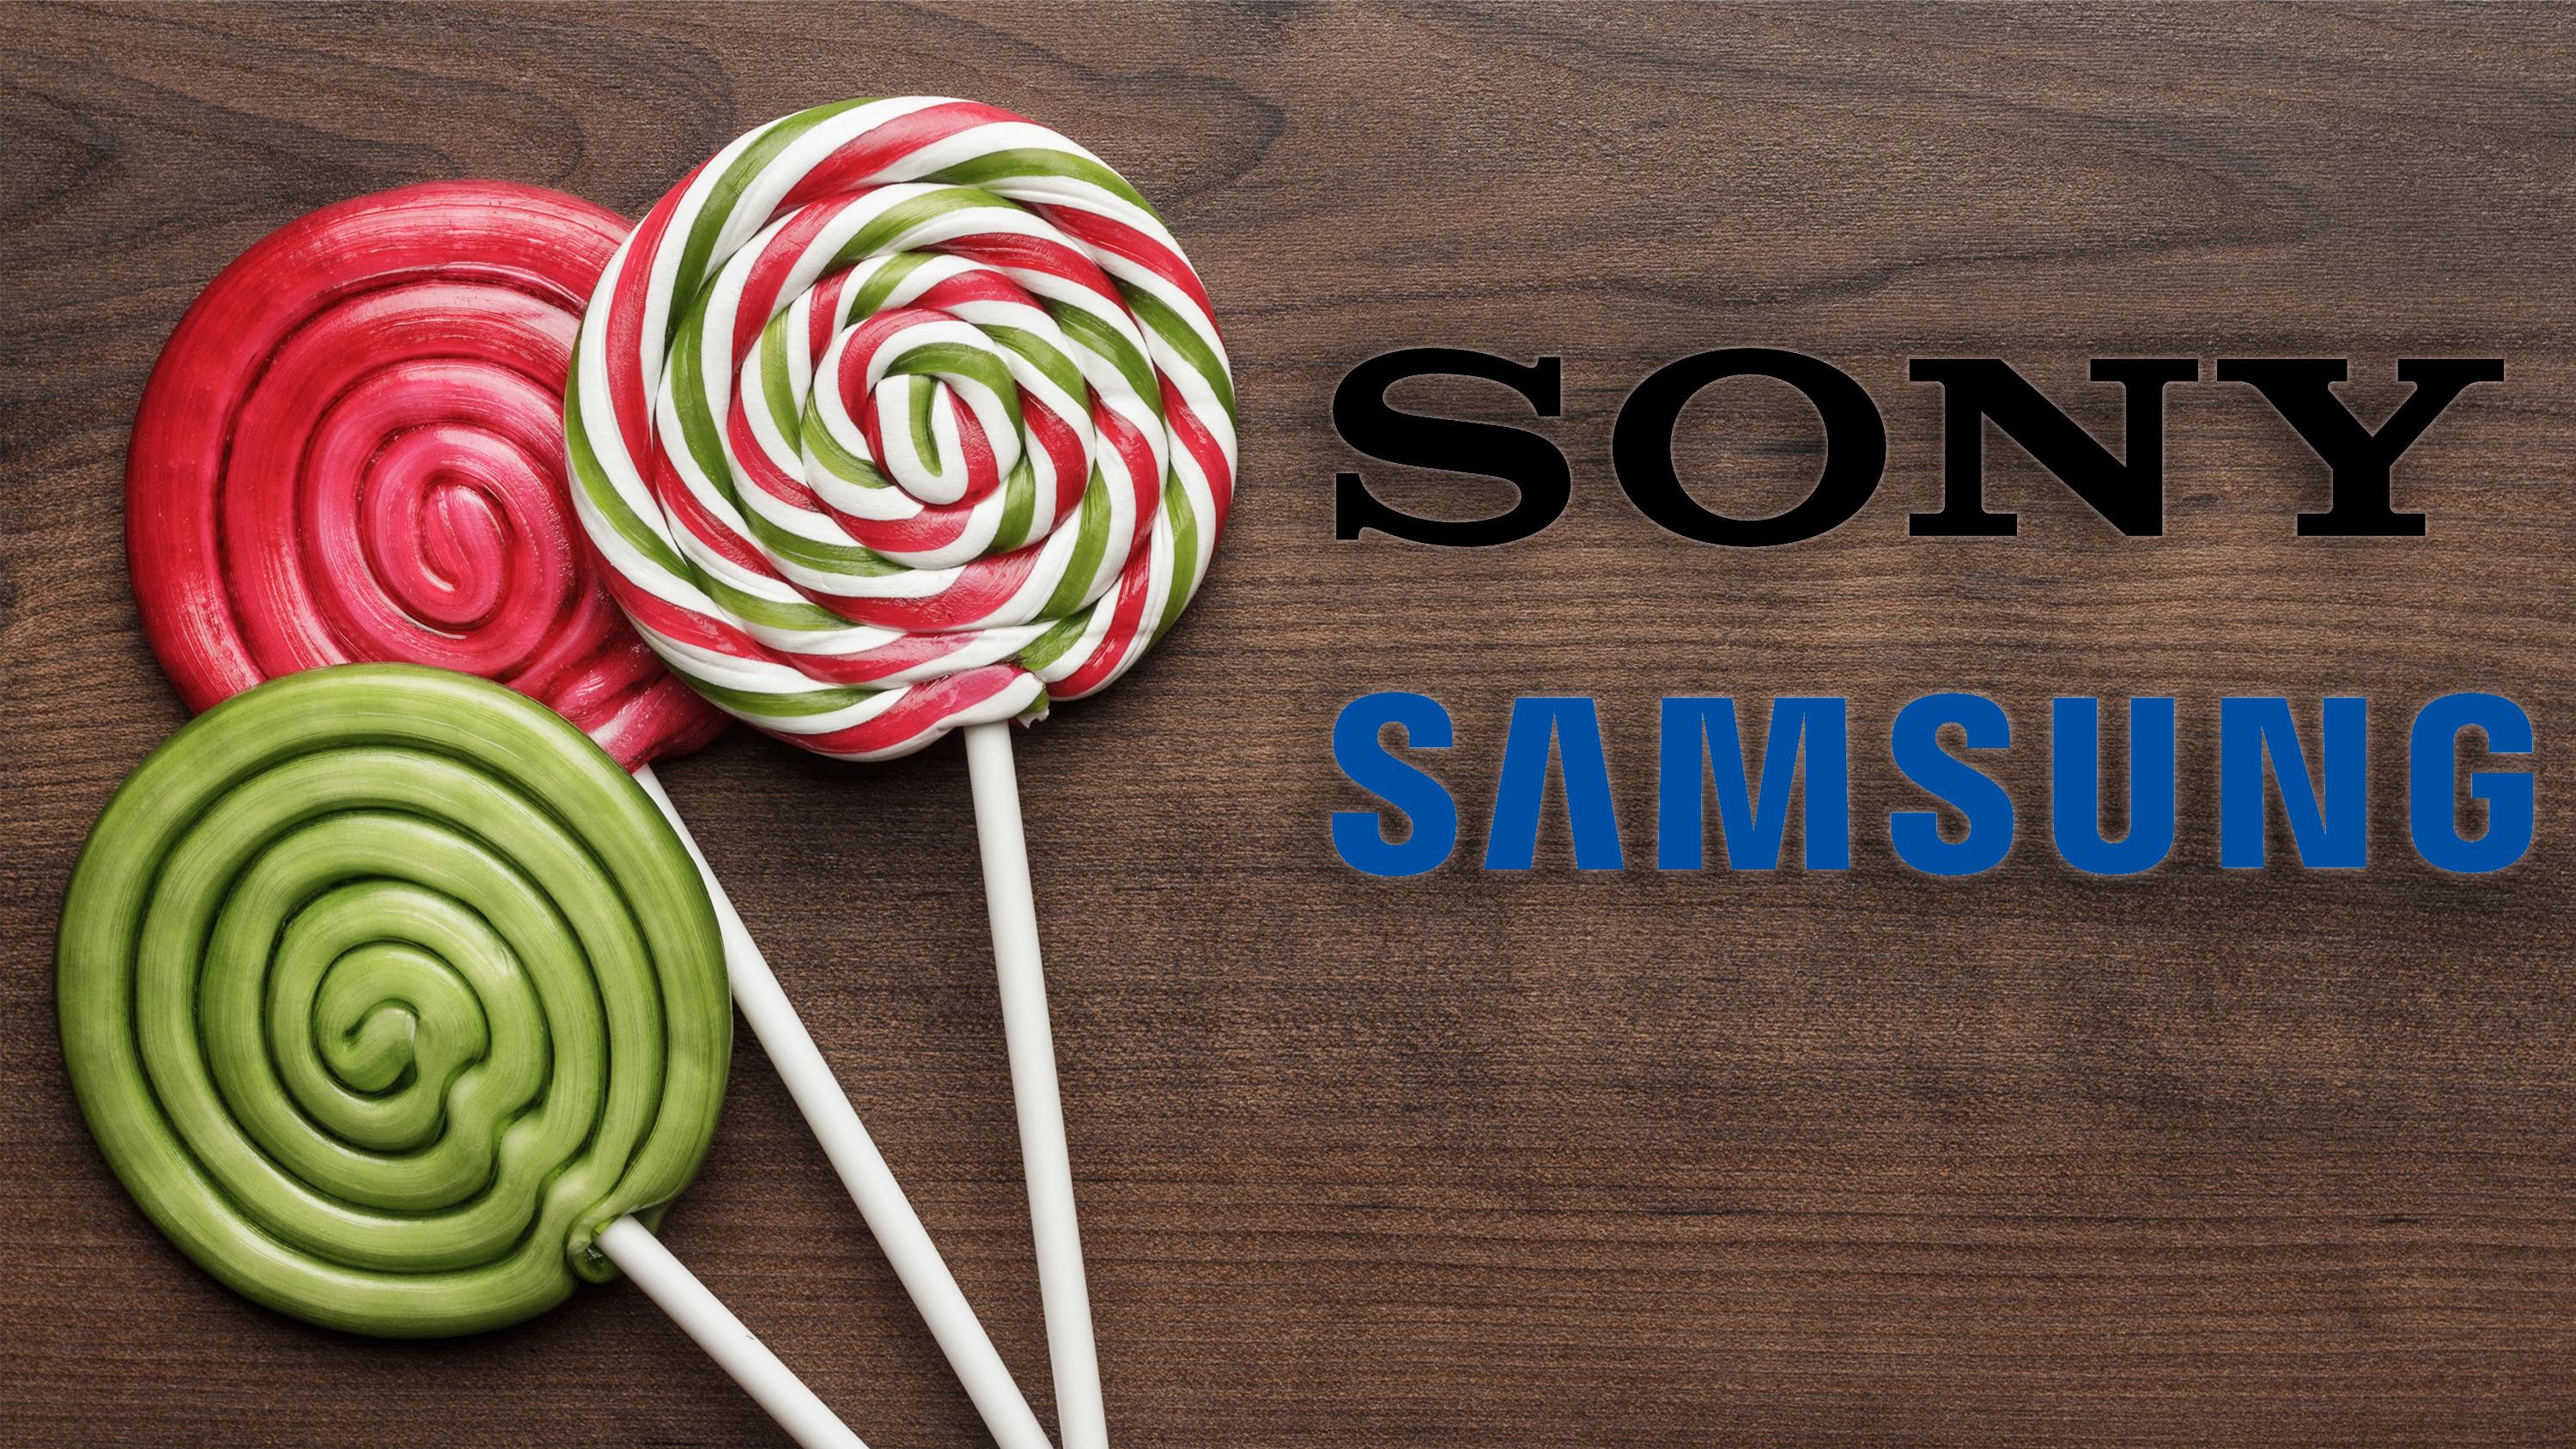 Nå får Samsung og Sonys eldre modeller også Lollipop